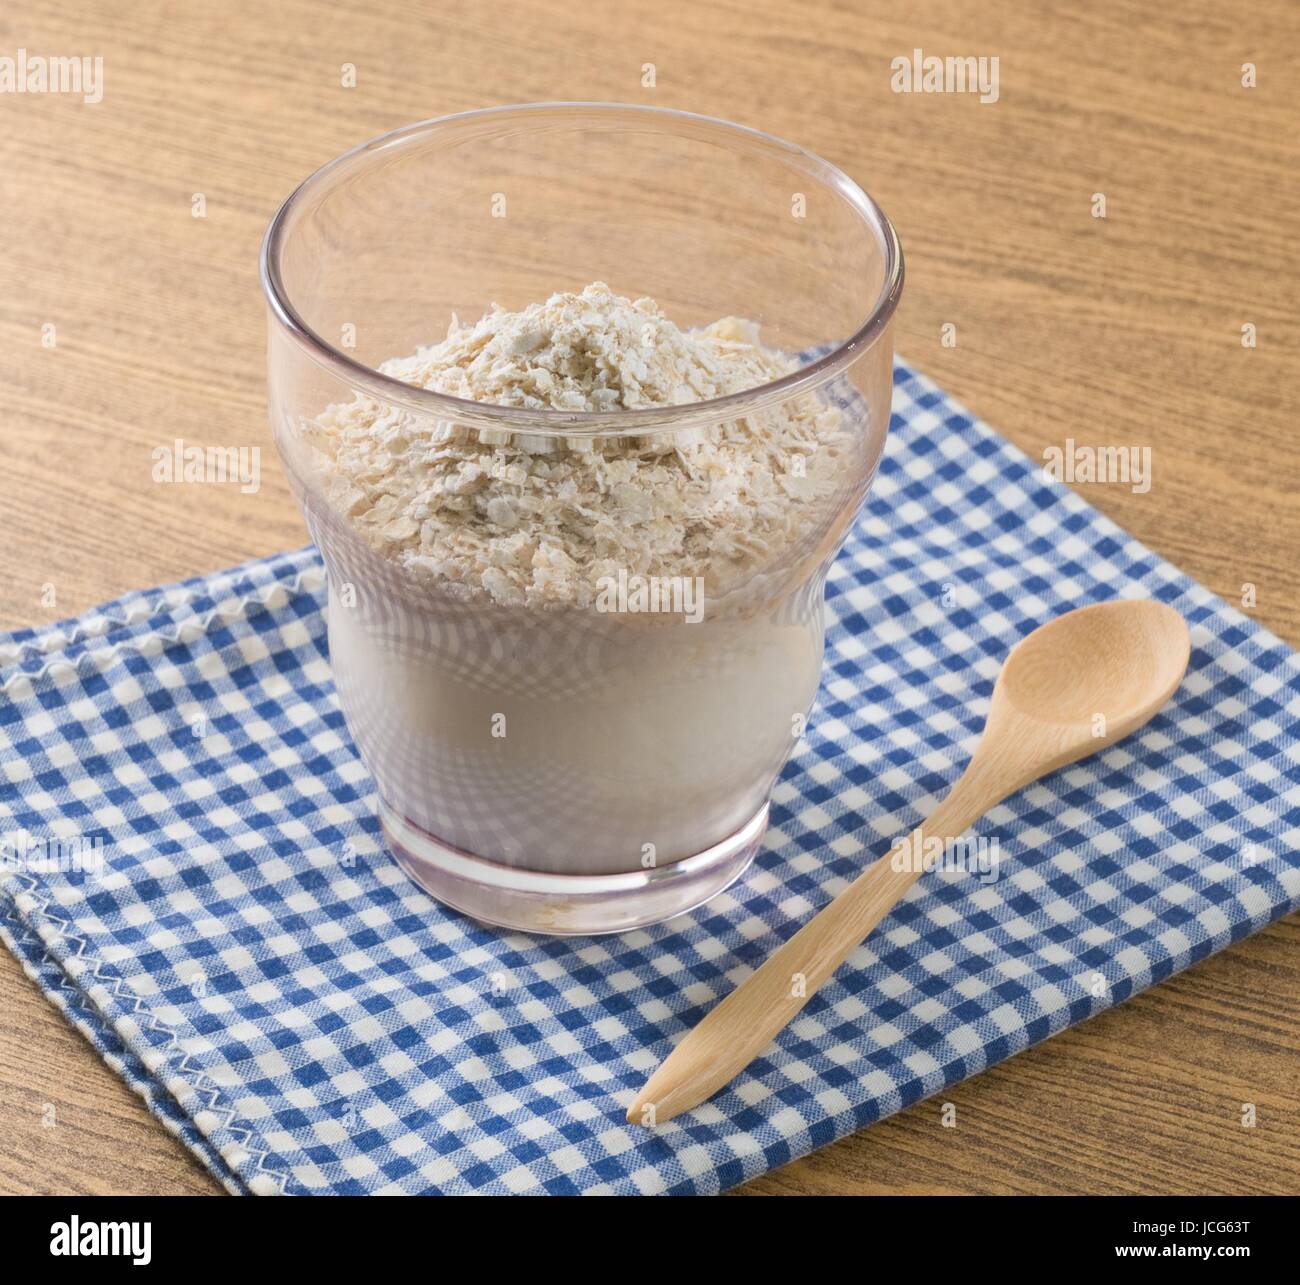 Verre de garniture du yaourt fait maison saine avec l'avoine, du point de vue nutritionnel riche en protéines, calcium, riboflavine, vitamine B6 et vitamine B12. Banque D'Images